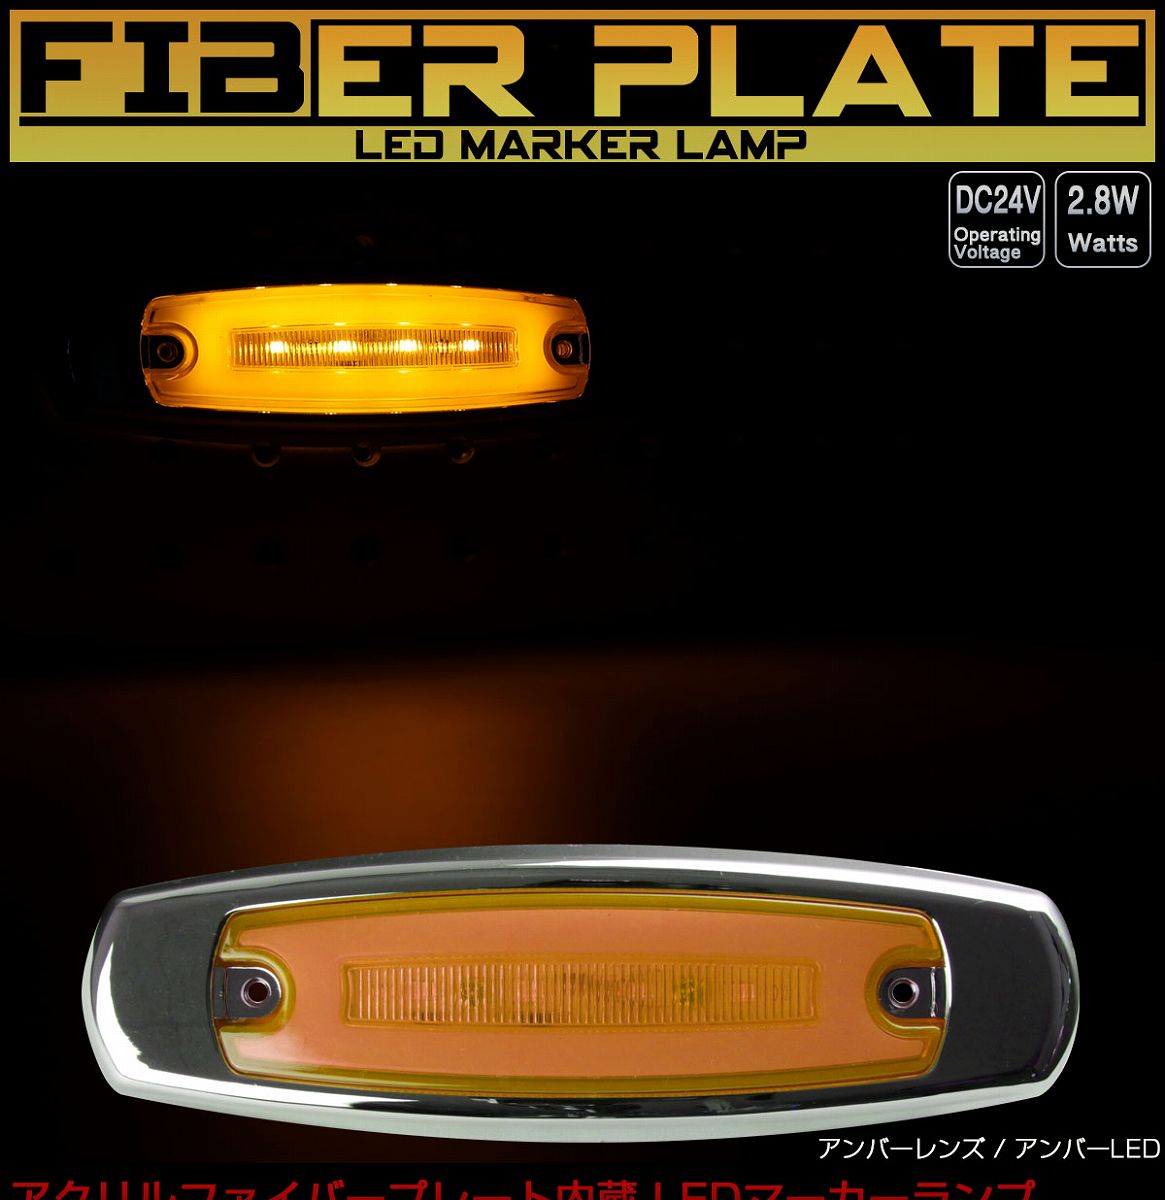 LED スリム マーカーランプ サイドマーカー アクリルプレート内蔵 面